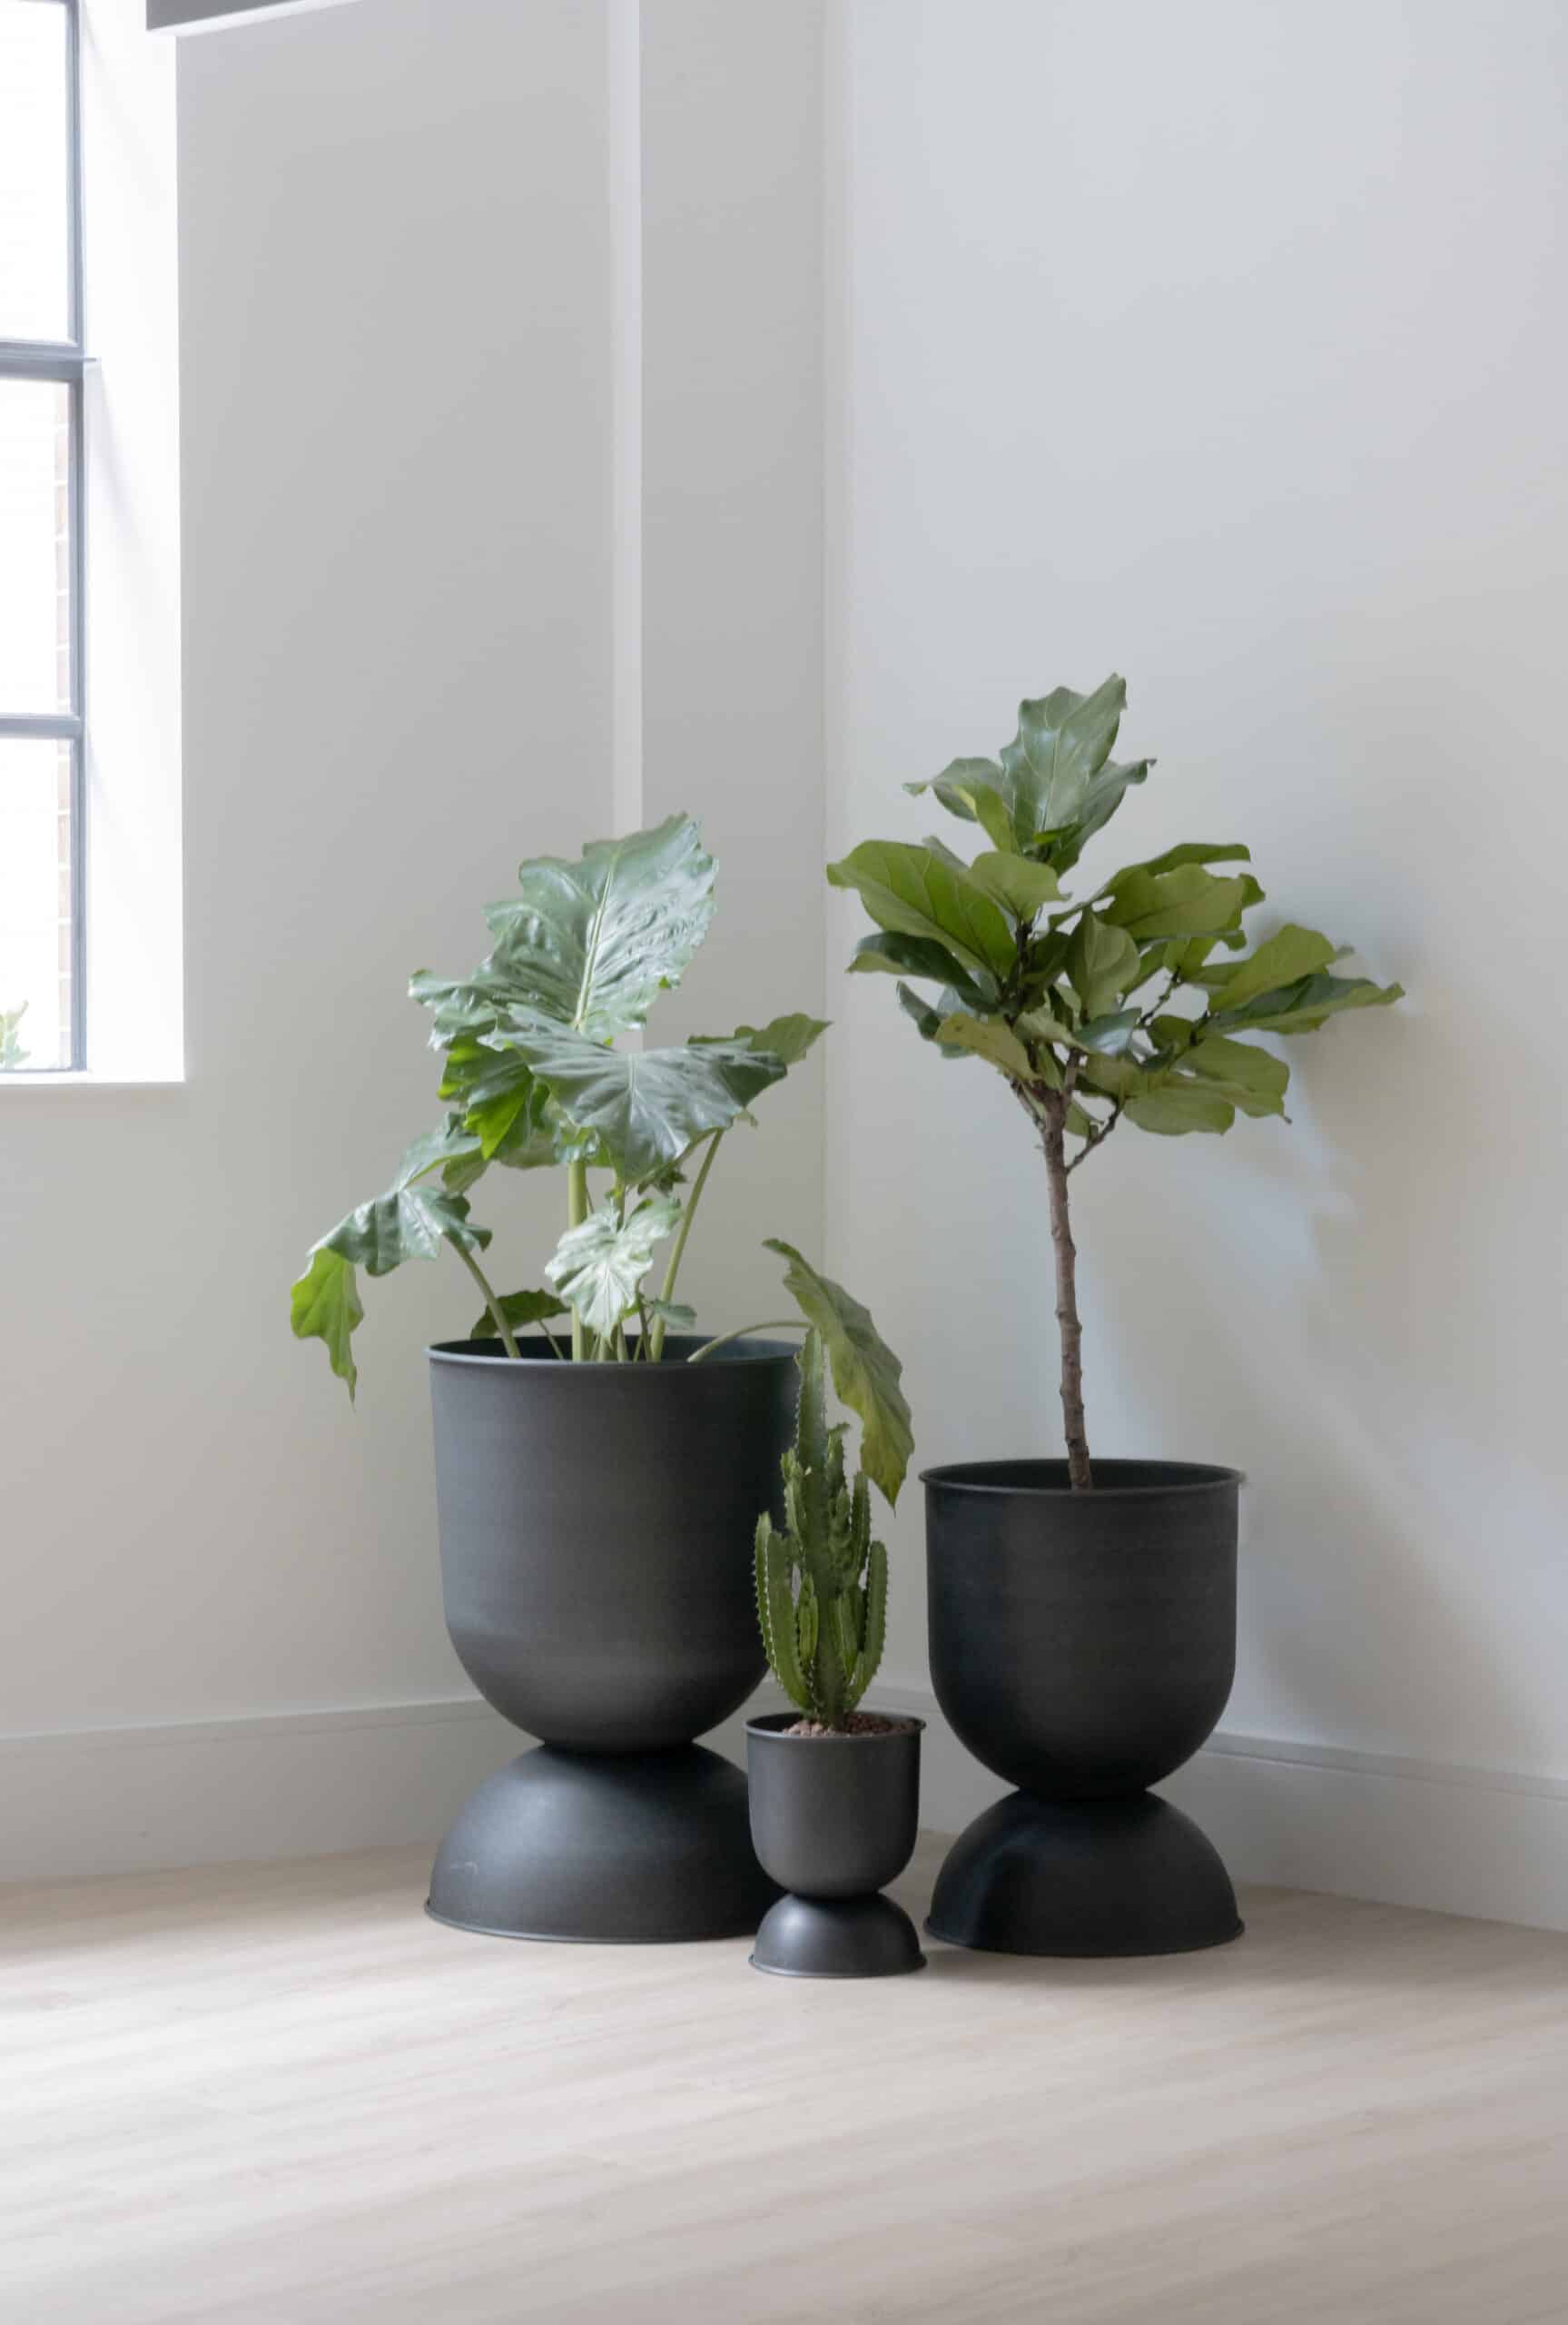 Large plant pots